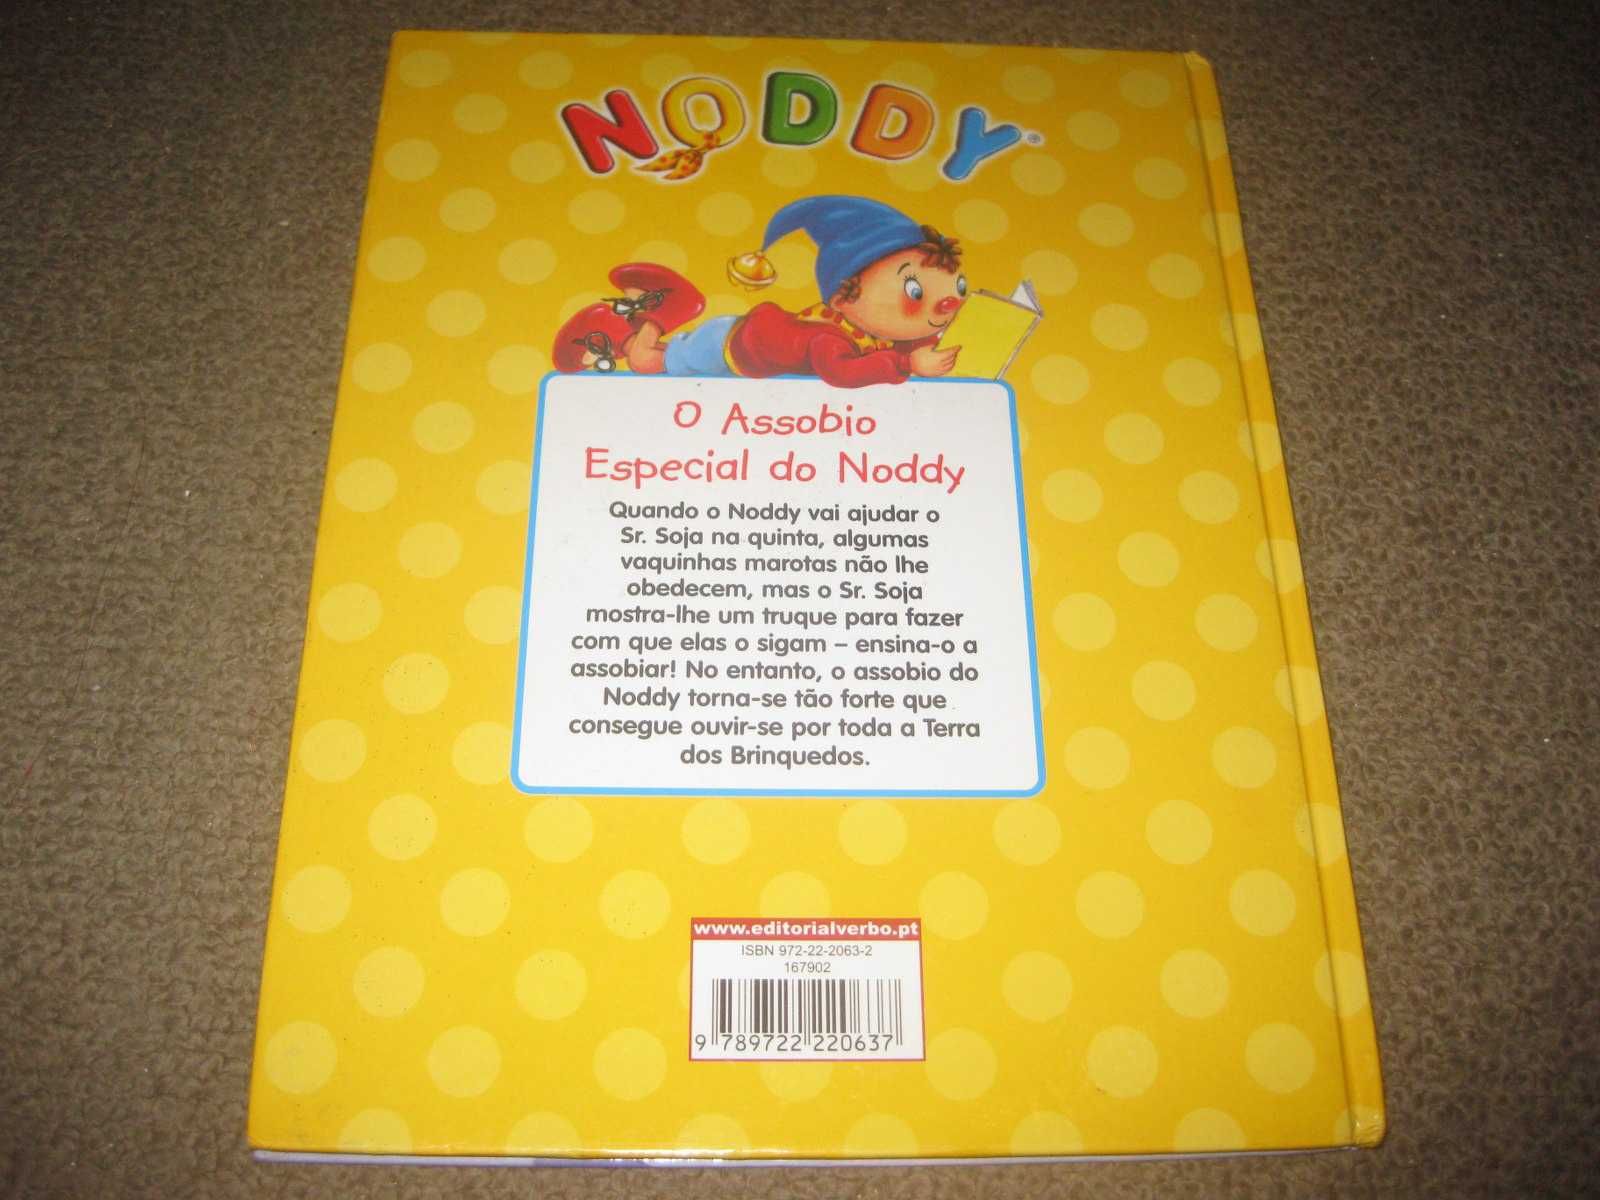 Livro Noddy "O Assobio Especial do Noddy"